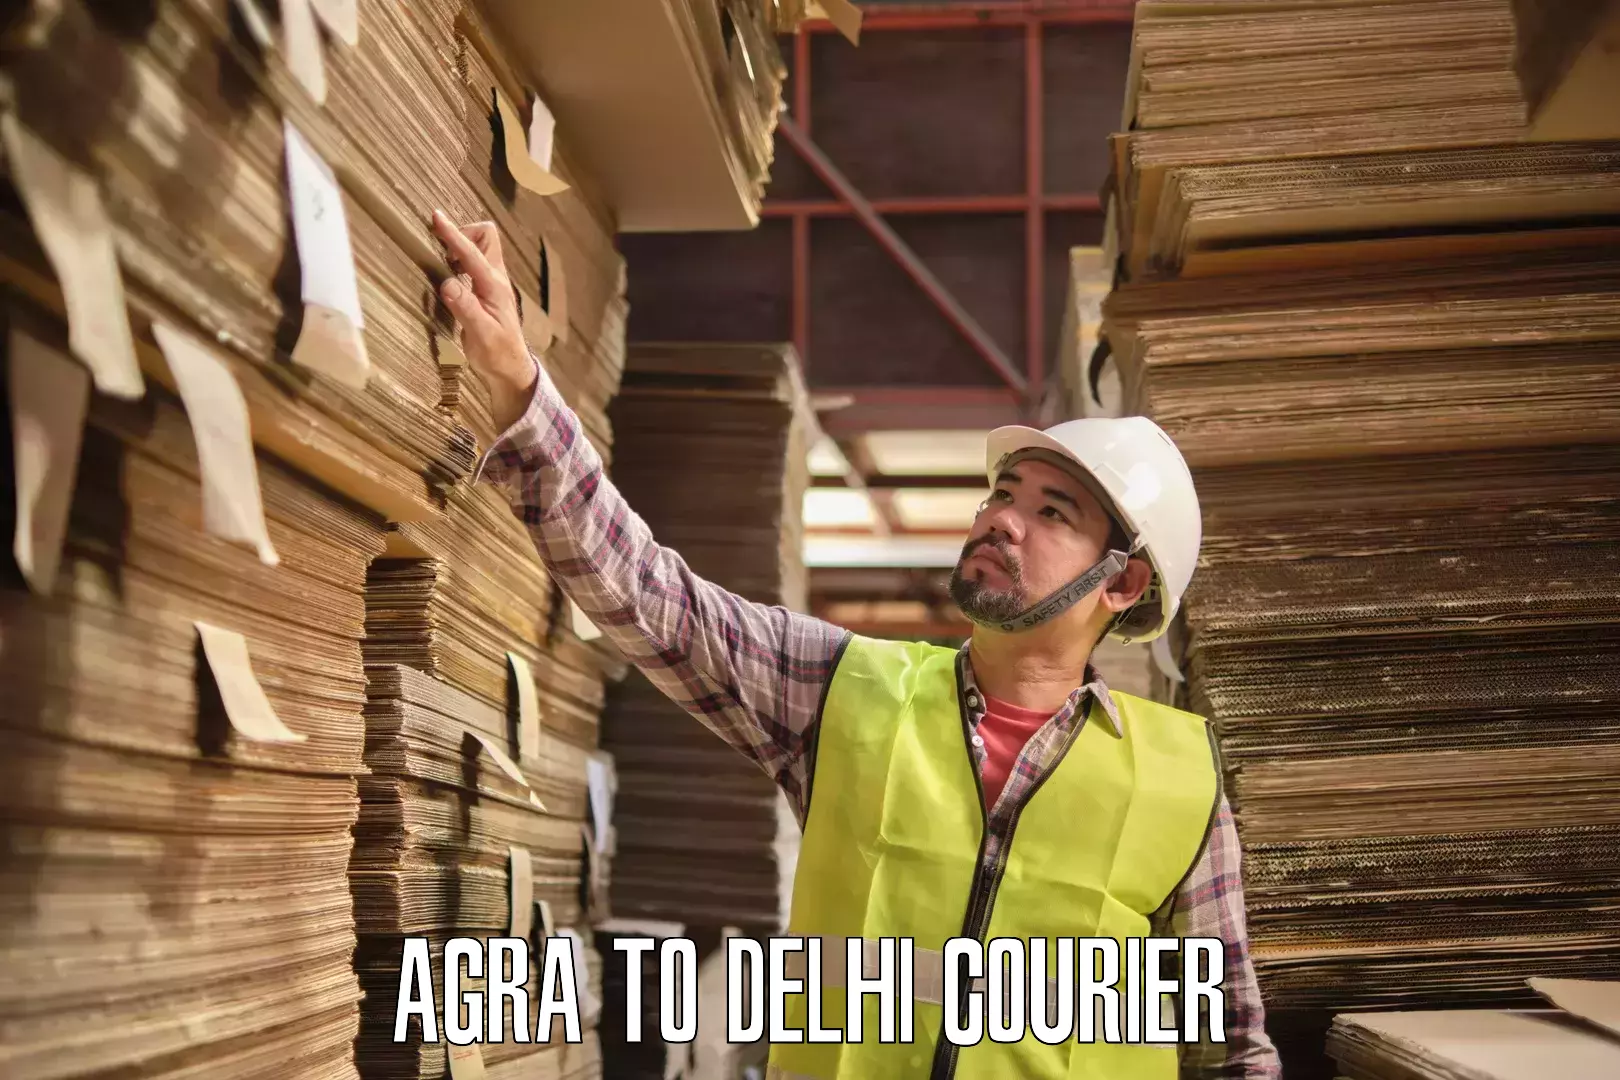 User-friendly delivery service Agra to Delhi